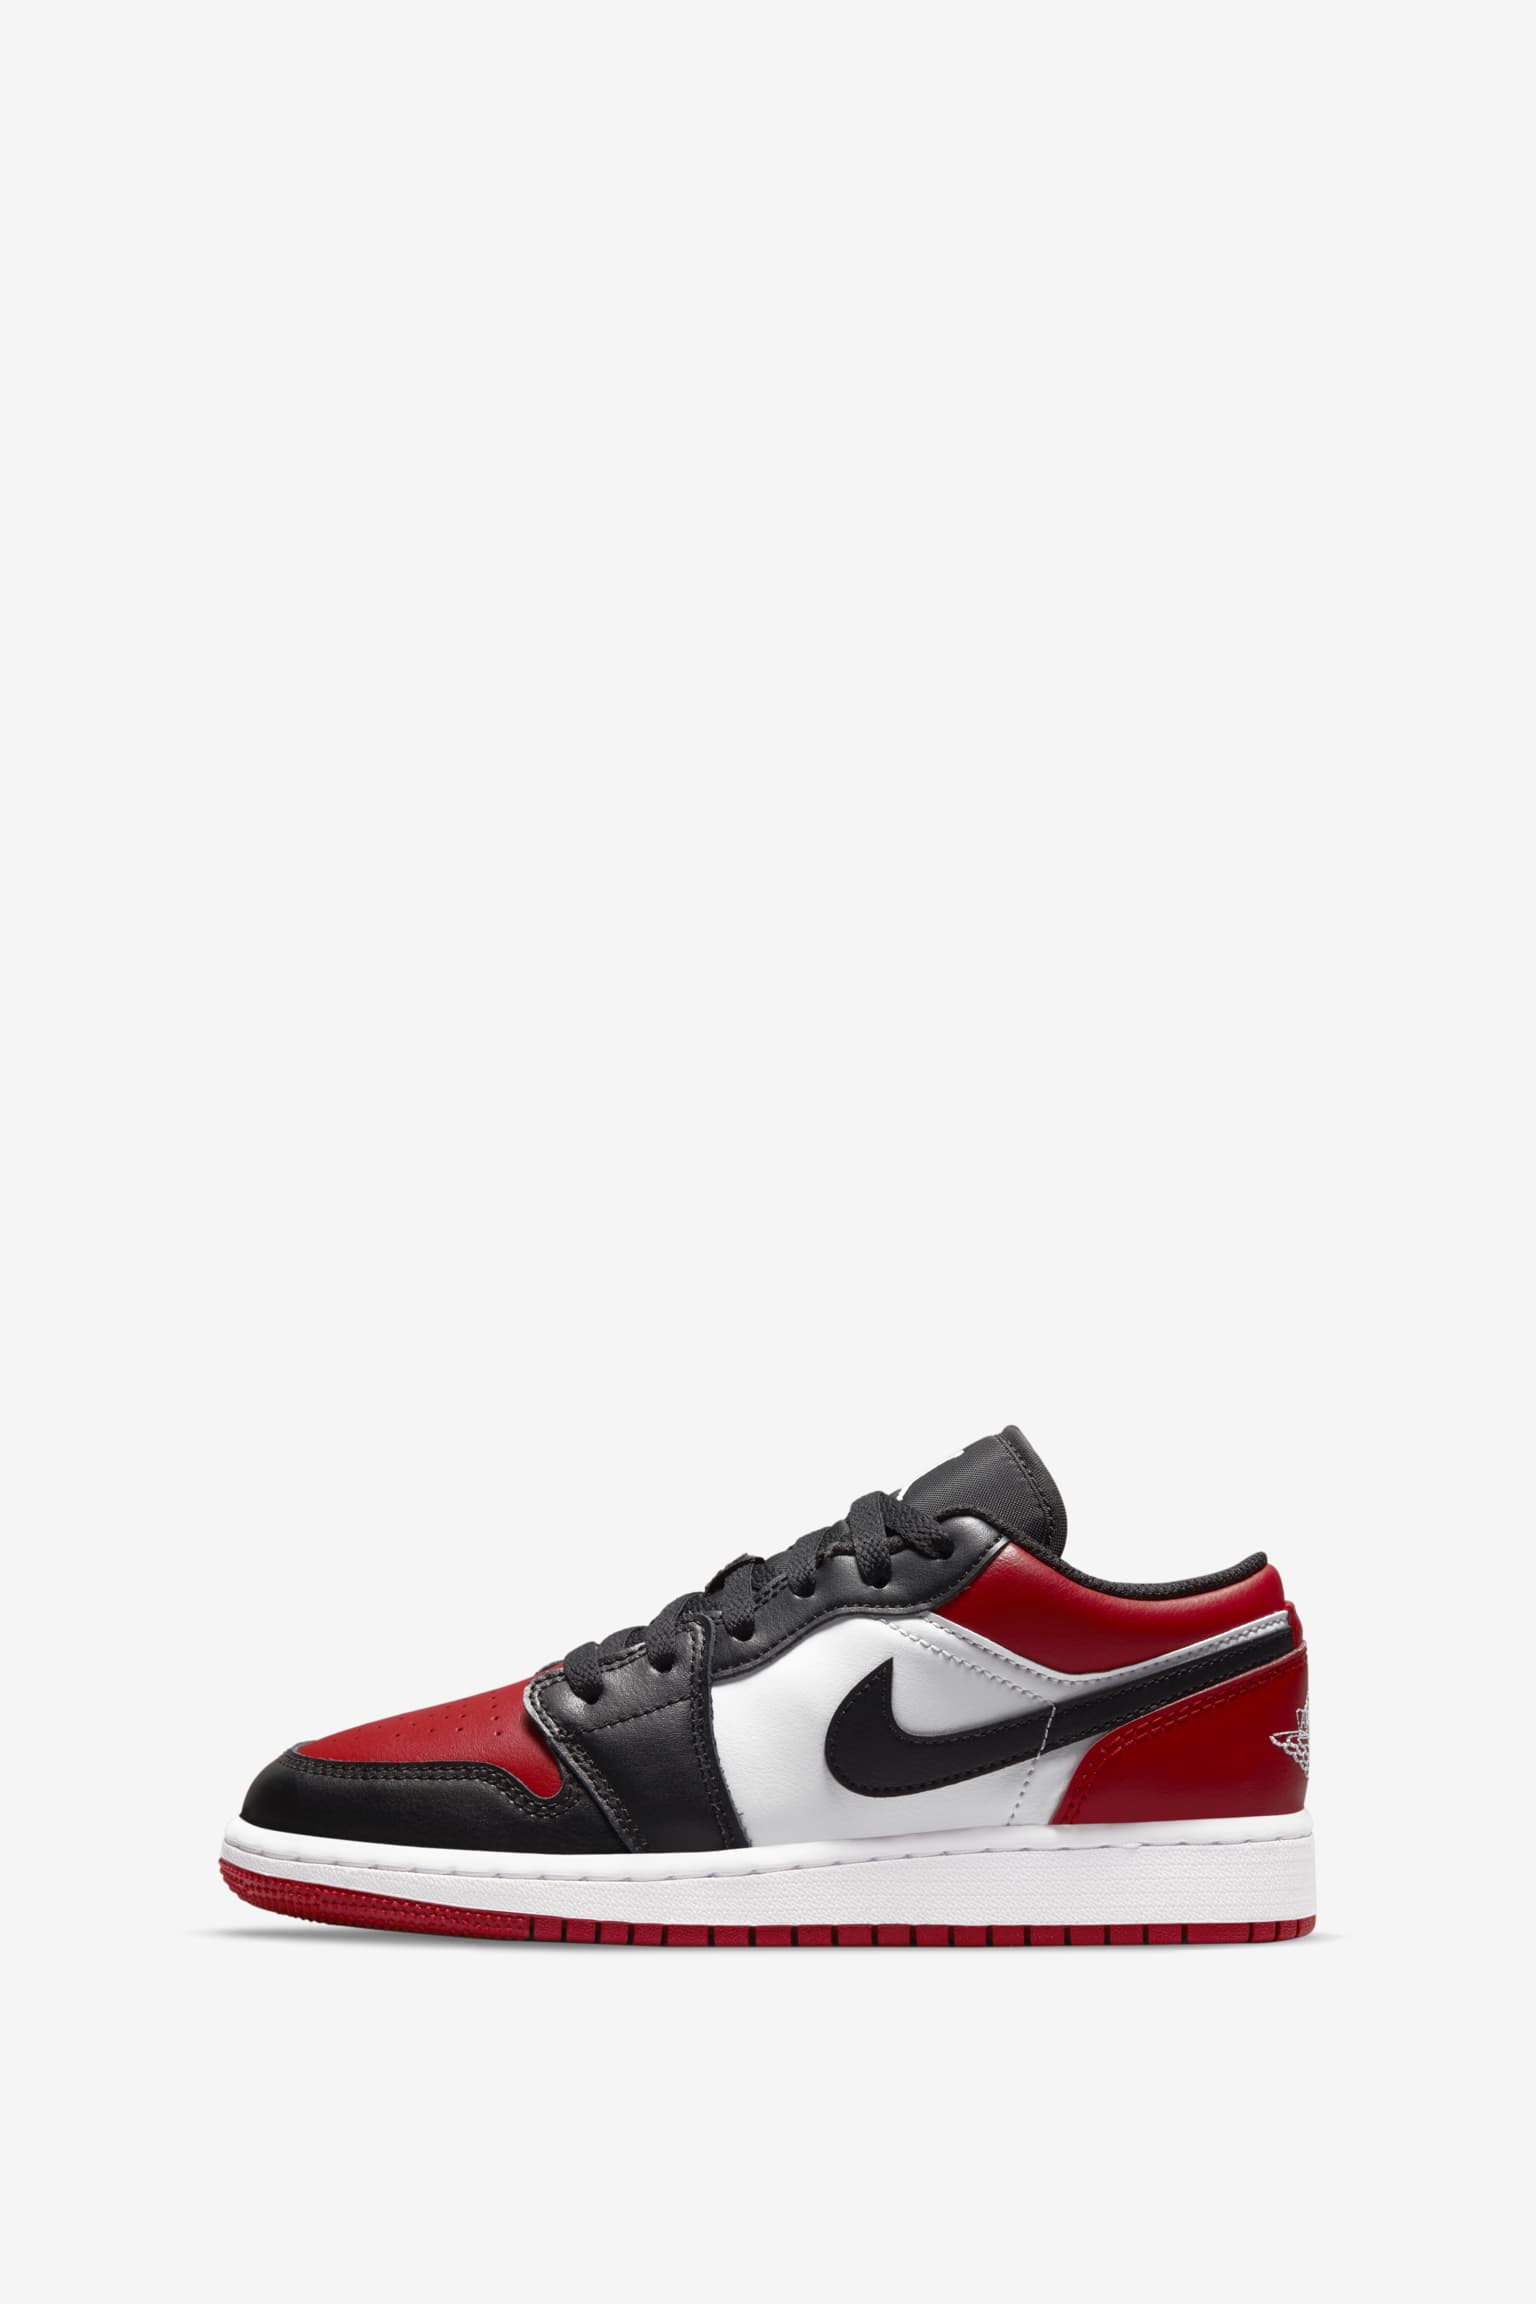 Air red low jordan 1 Jordan 1 Low 'Gym Red' (553558-612) Release Date. Nike SNKRS MY